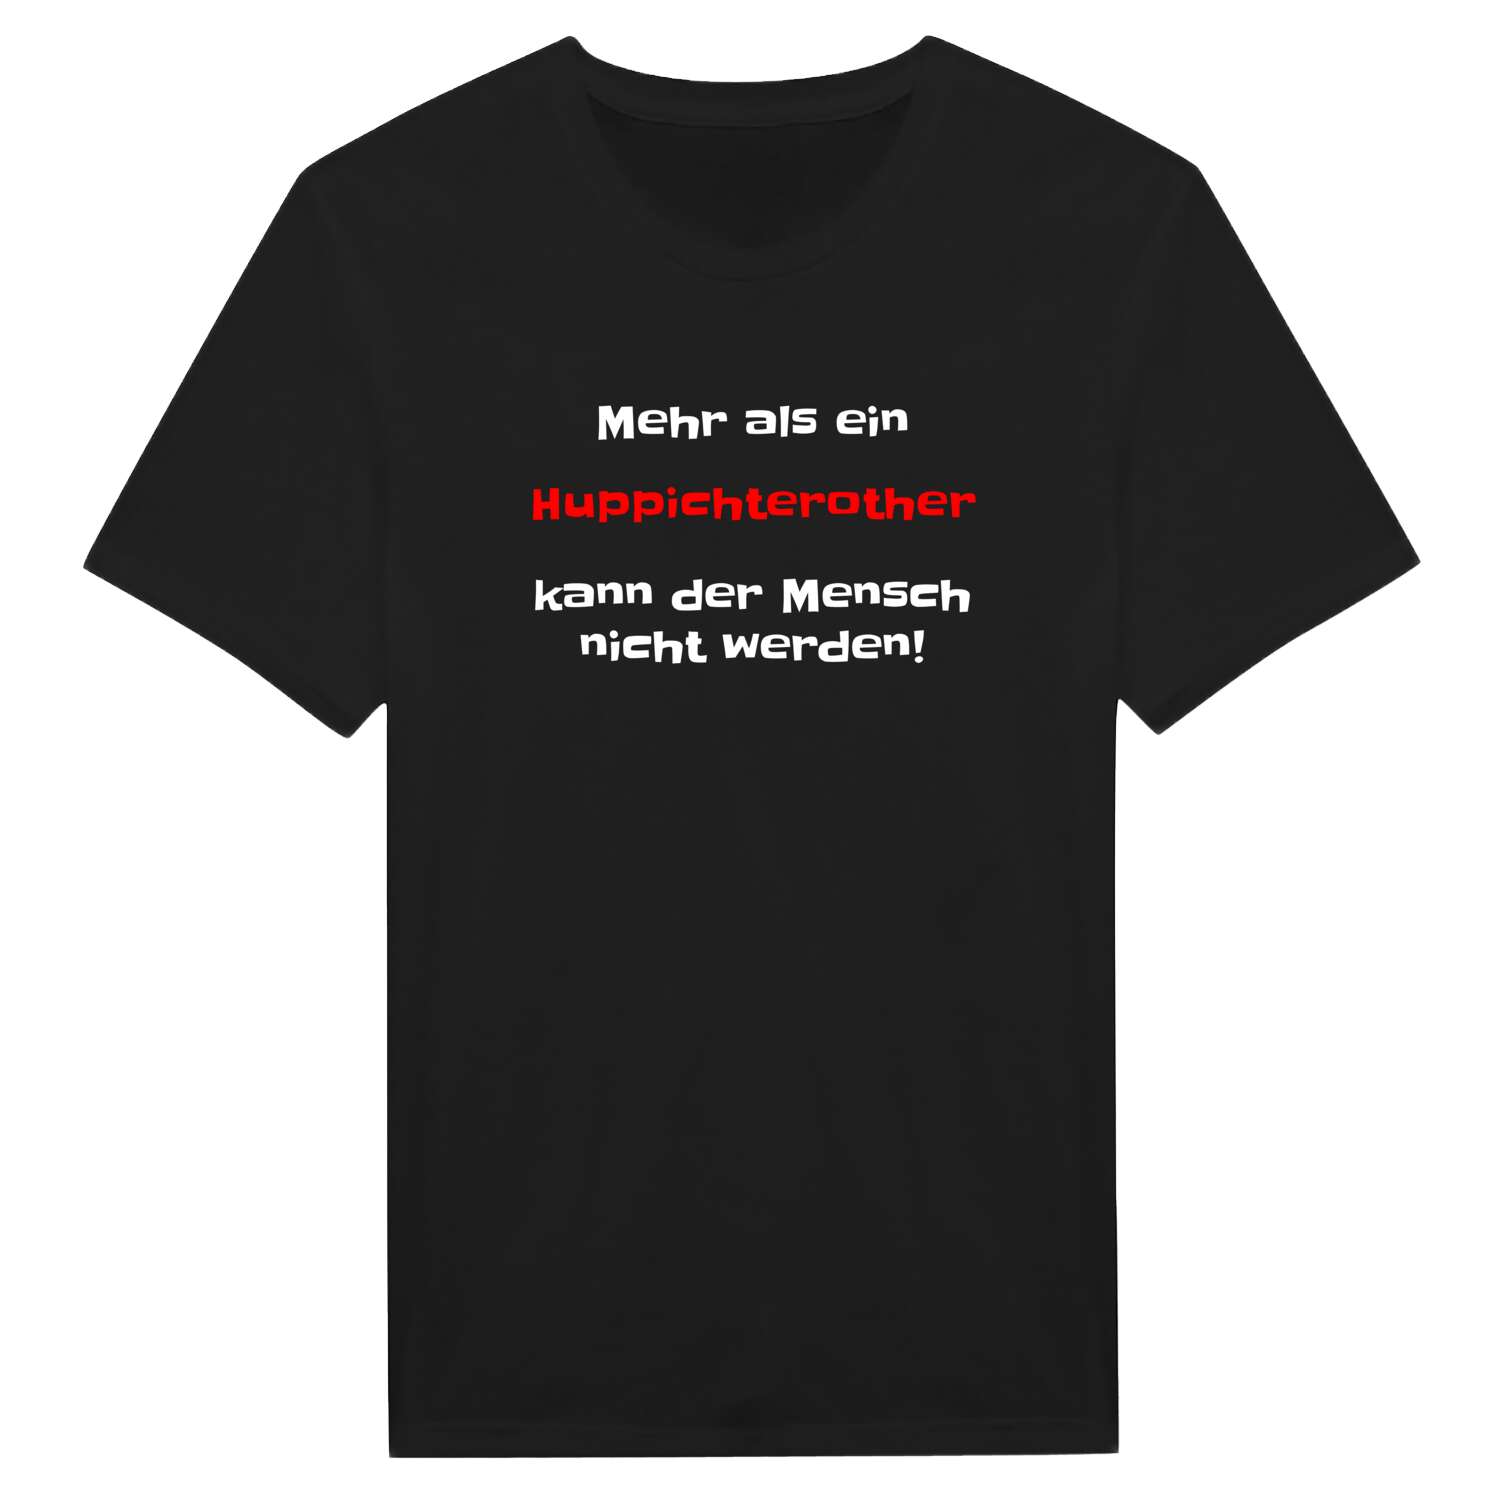 Huppichteroth T-Shirt »Mehr als ein«